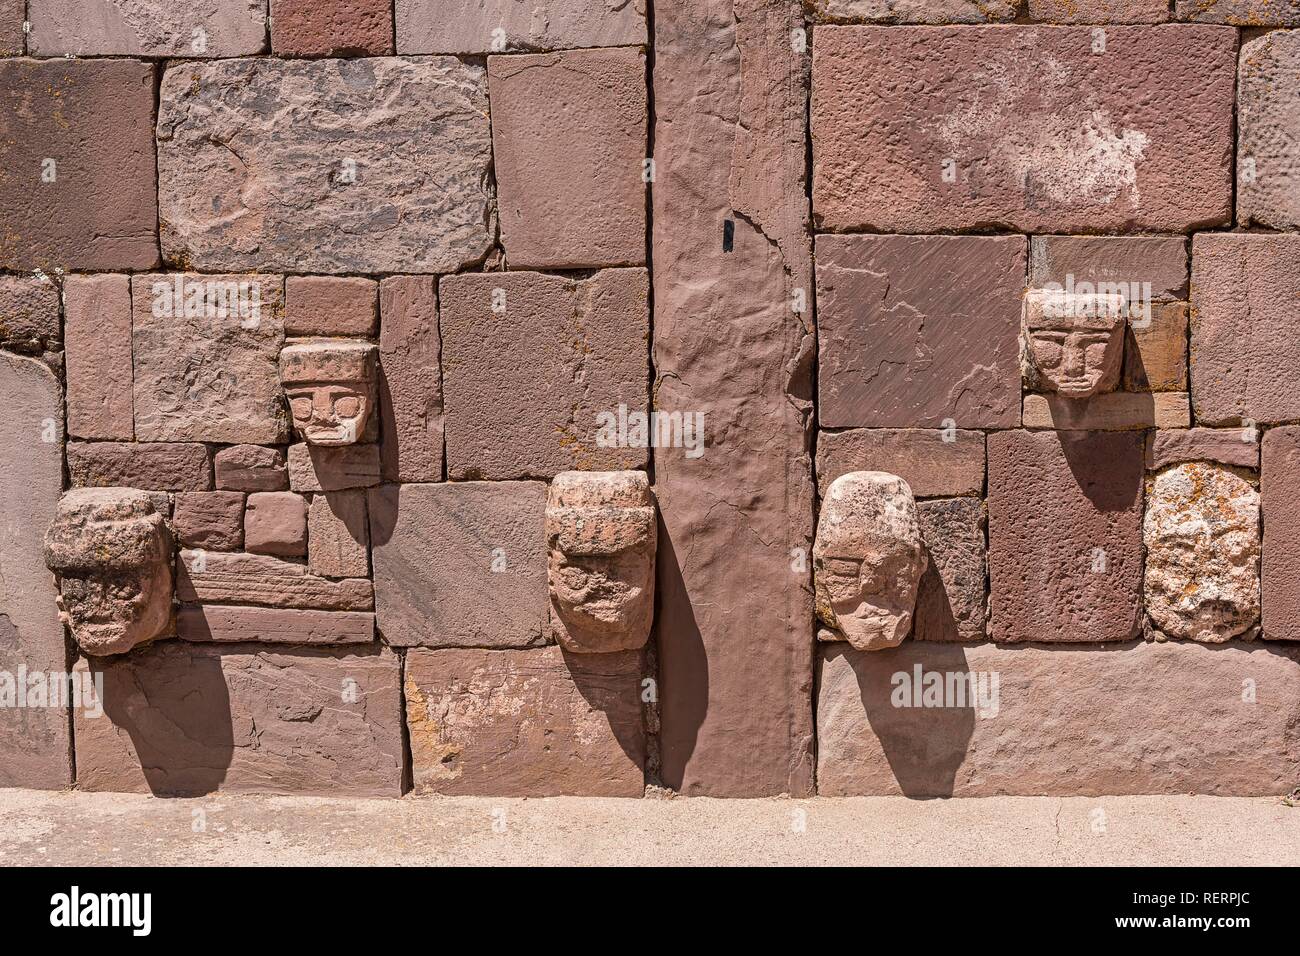 Cabezas de piedra en el muro del templo de Kalasasaya (lugar de piedras) con monolitos del período pre-Inca Foto de stock